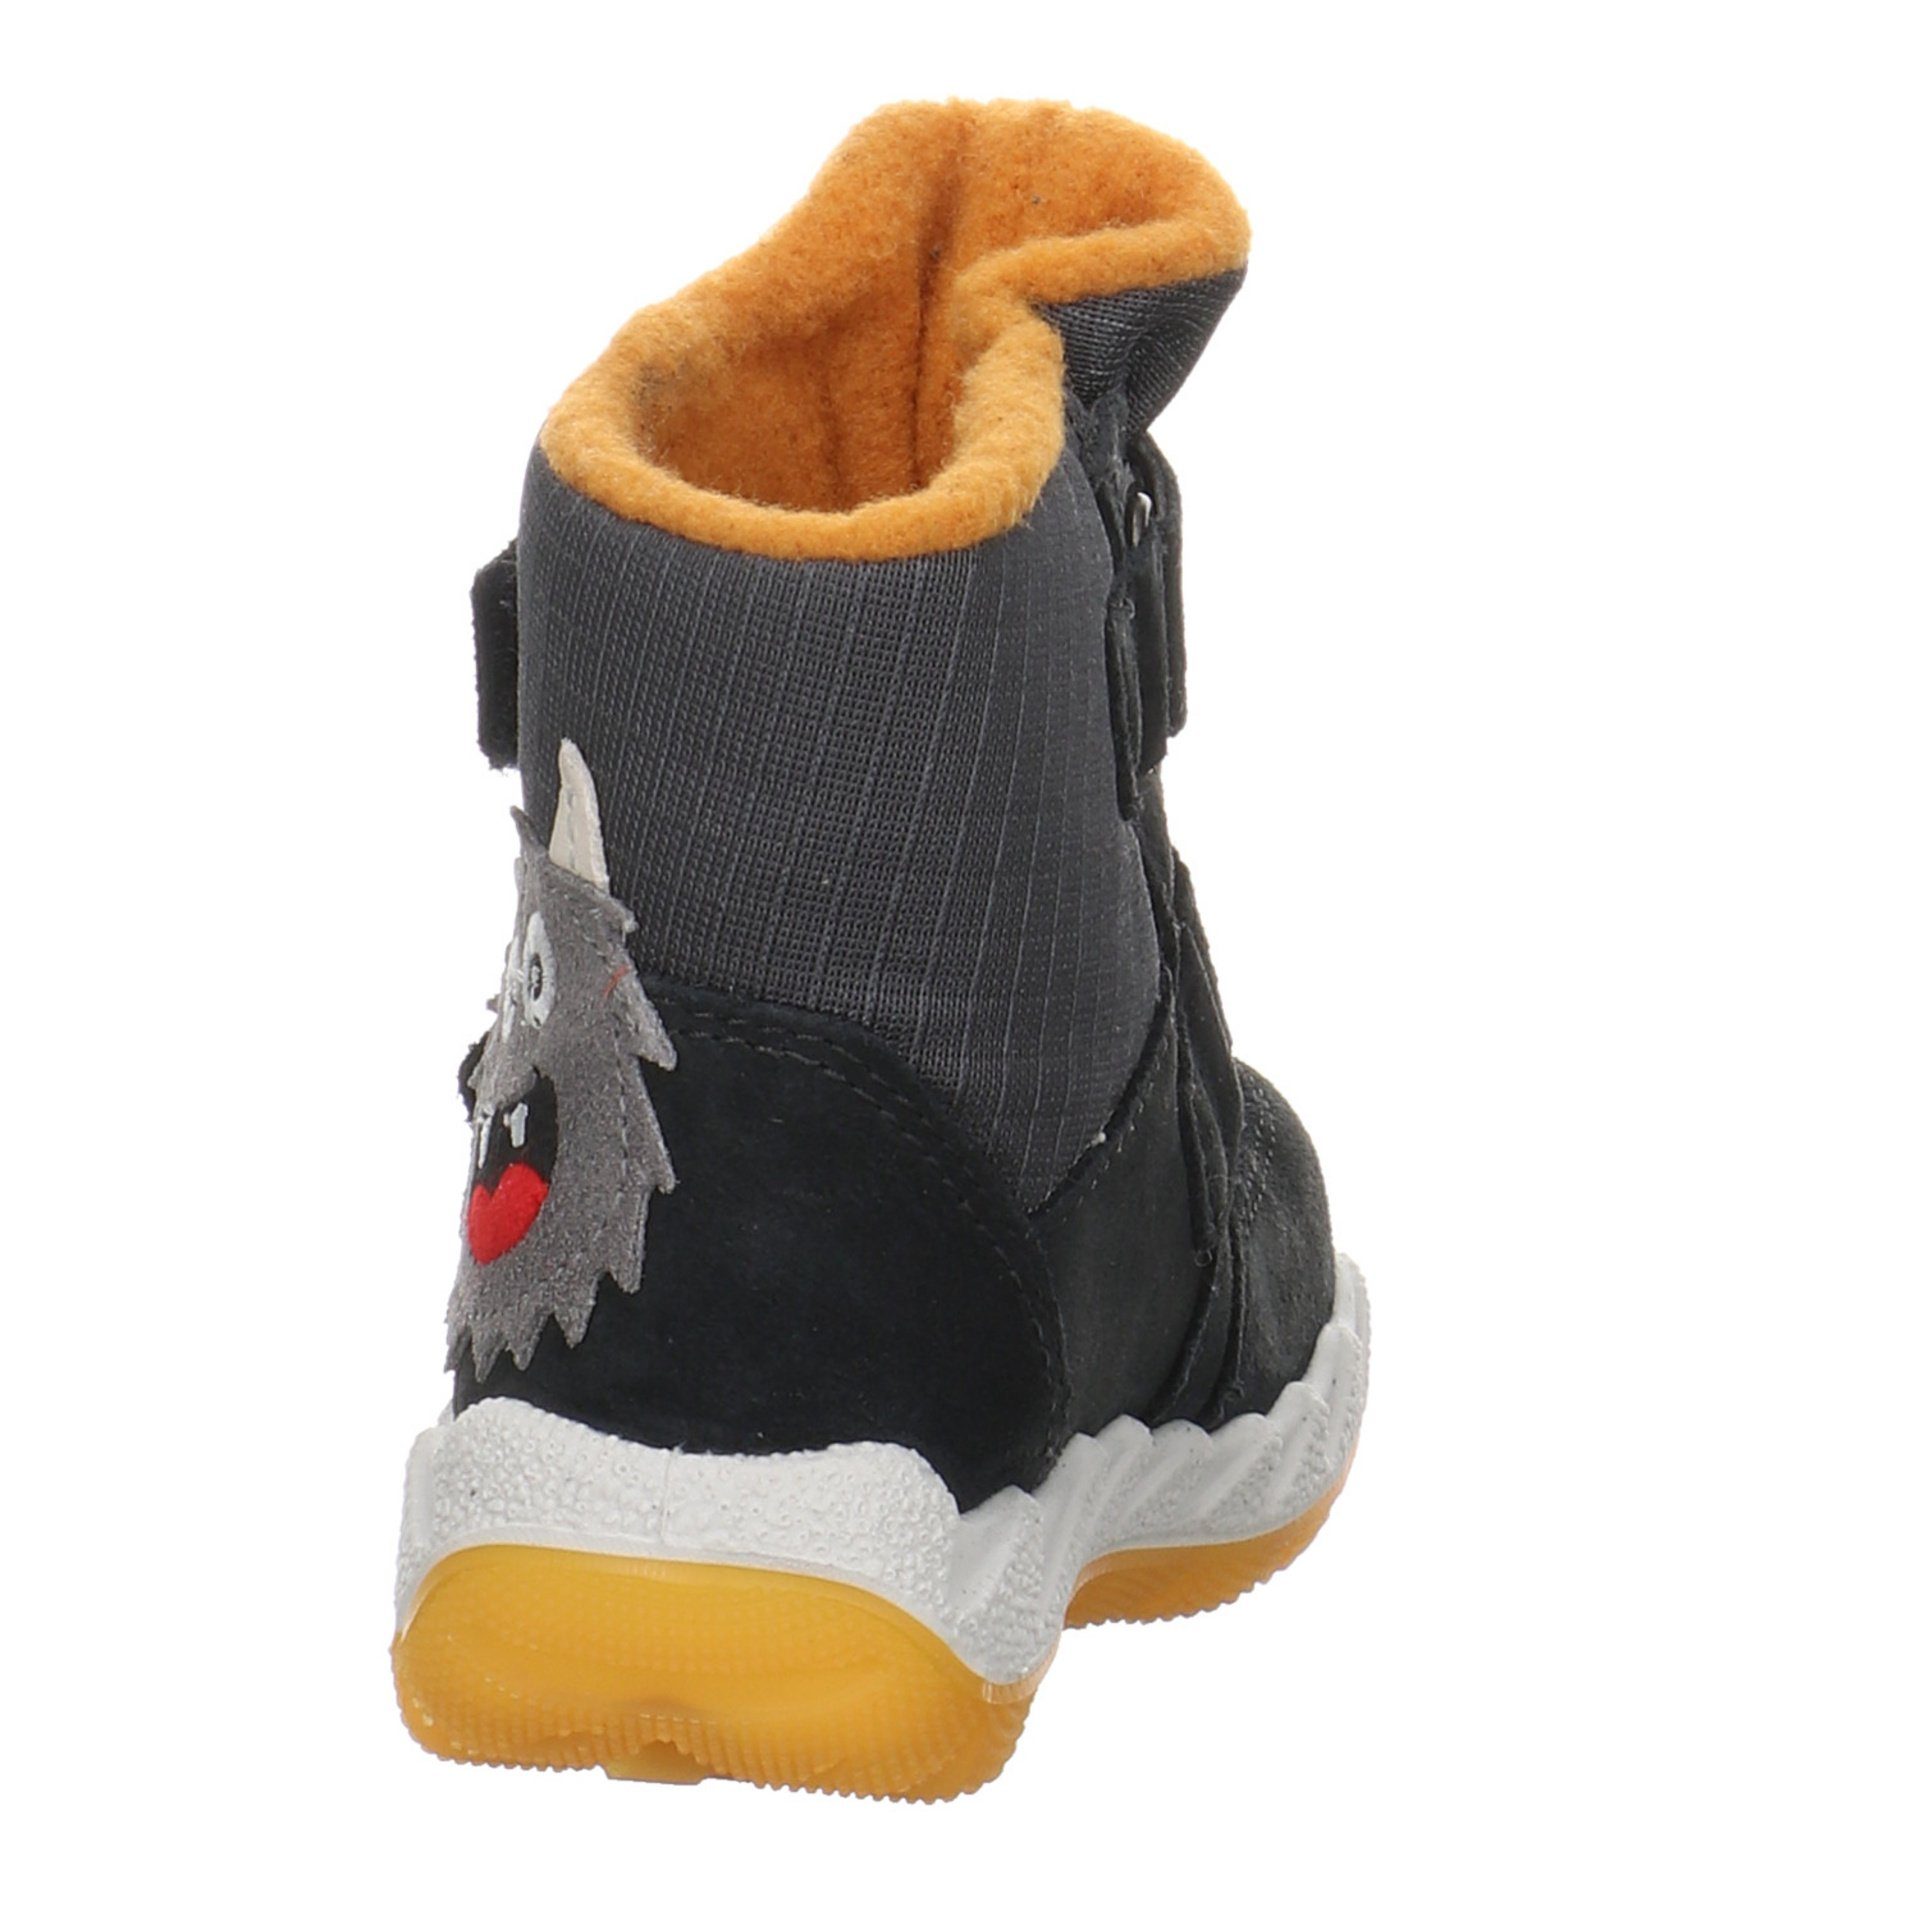 grau Lauflernschuhe Baby Leder-/Textilkombination Superfit Krabbelschuhe Icebird Lauflernschuh Boots gelb